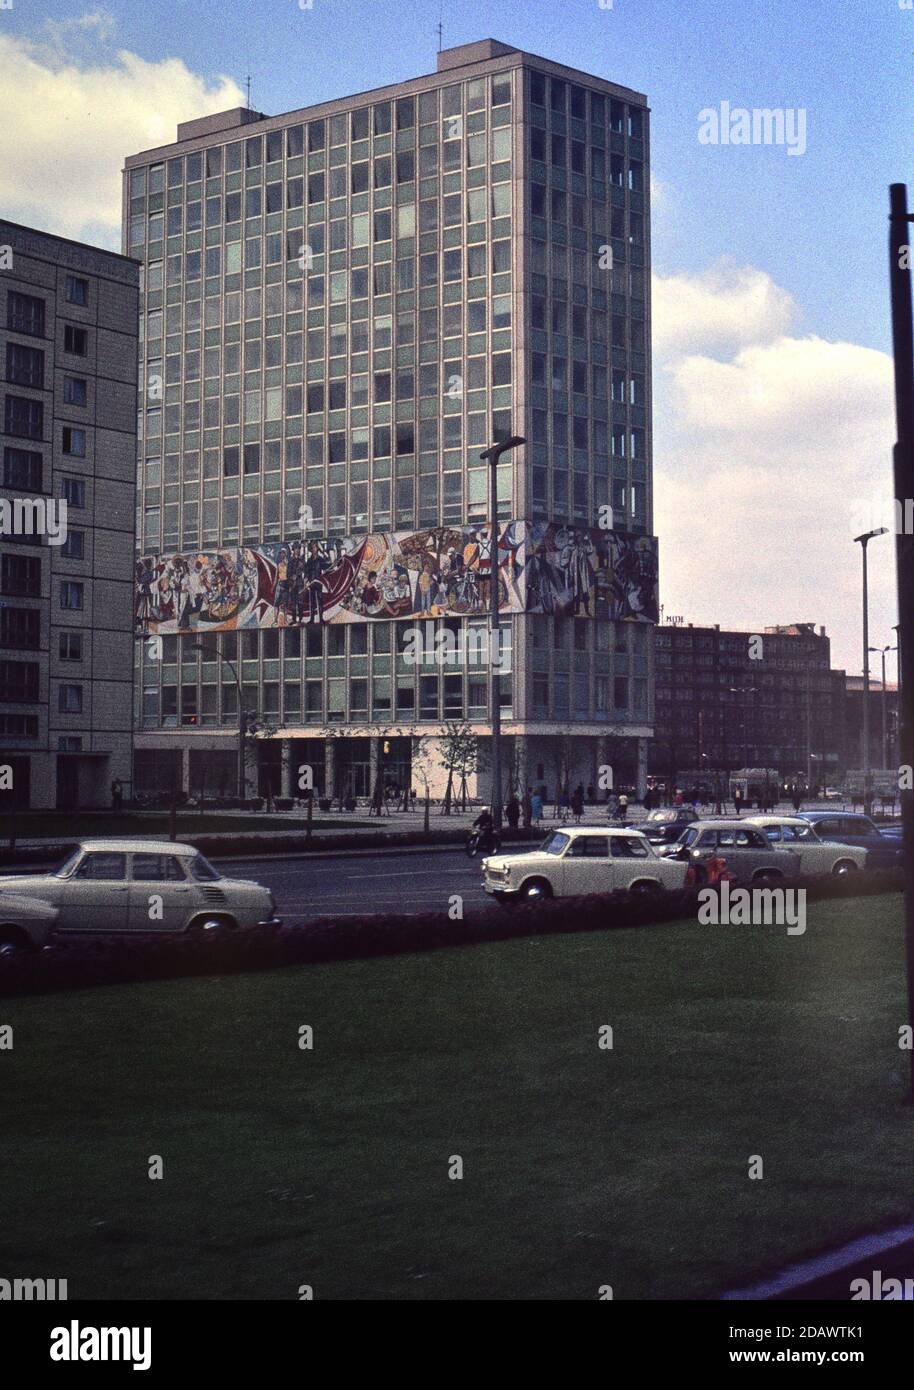 Pittura murale comunista su un blocco d'ufficio preso nel giugno 1965, Berlino Est, tedesco.Slide preso su Agfacoulour CT18 slide pellicola usando un 35mm Petri 5 SL Foto Stock